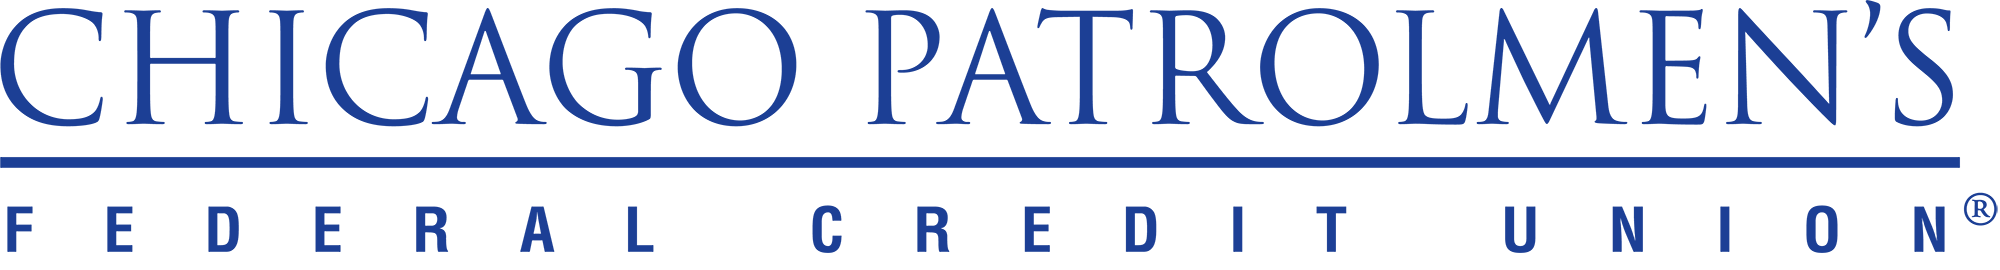 chipat--blue®-logo